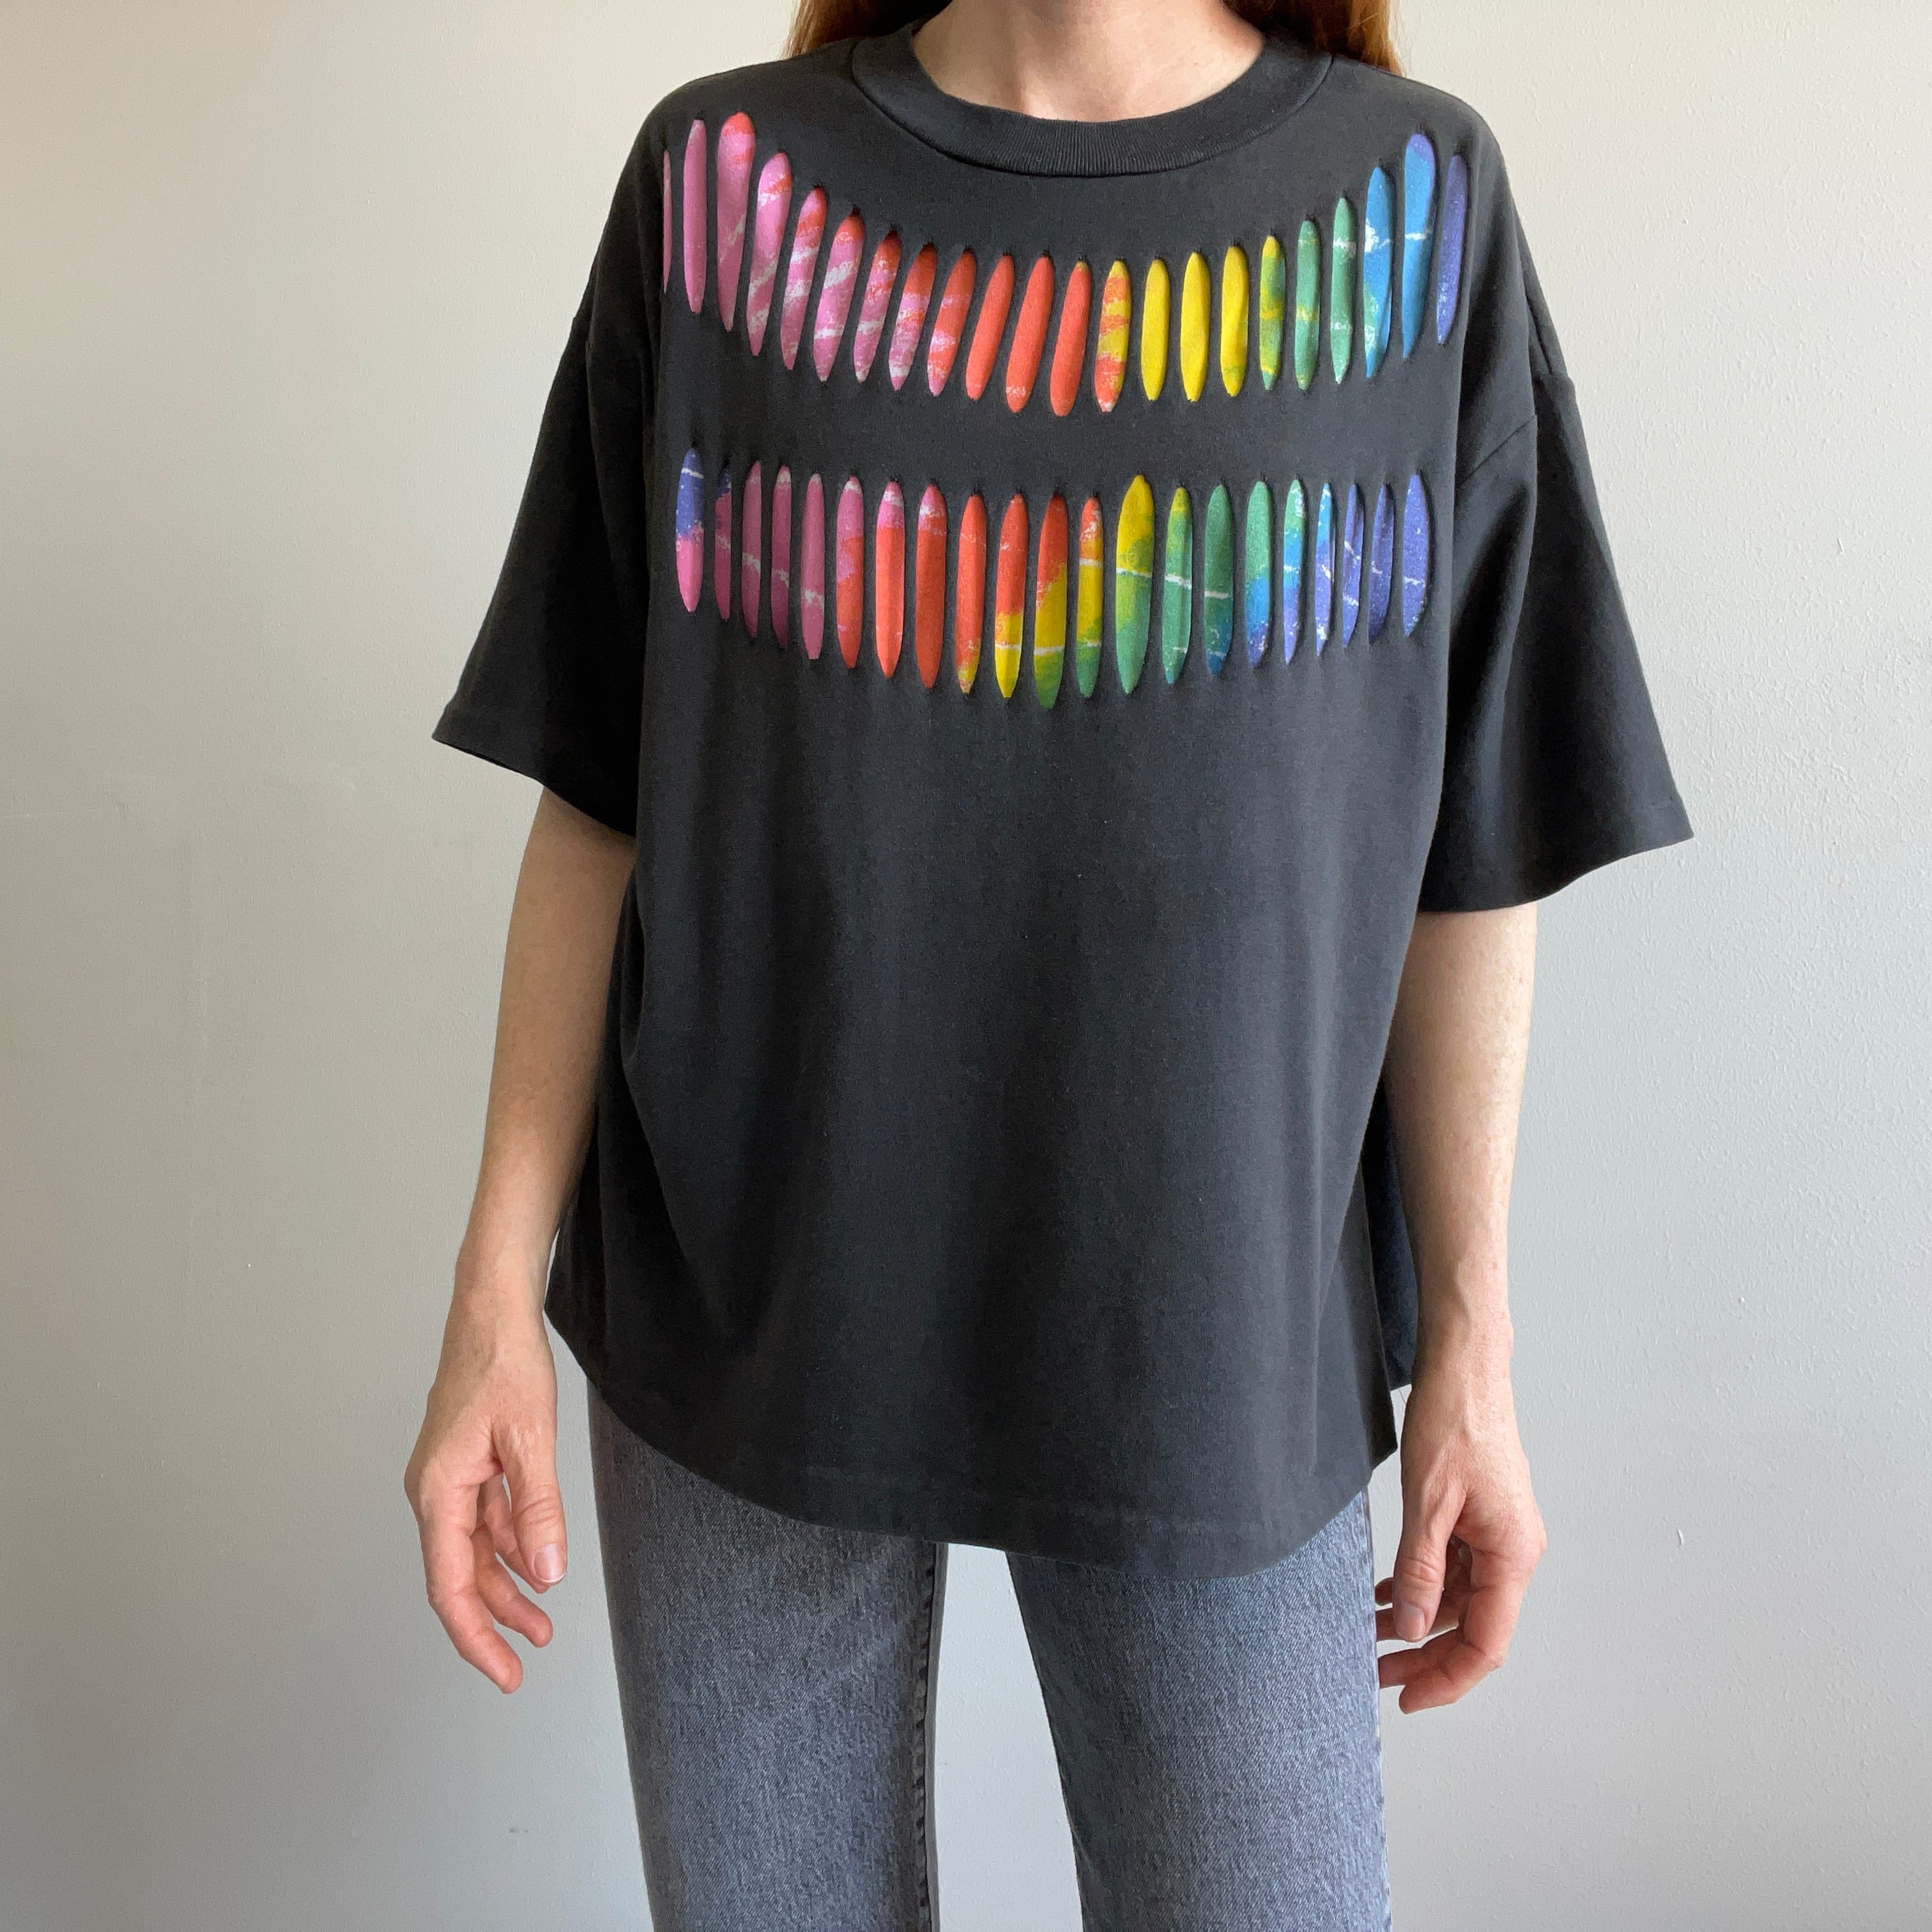 1980s Boxy Slashed Colorful T-Shirt